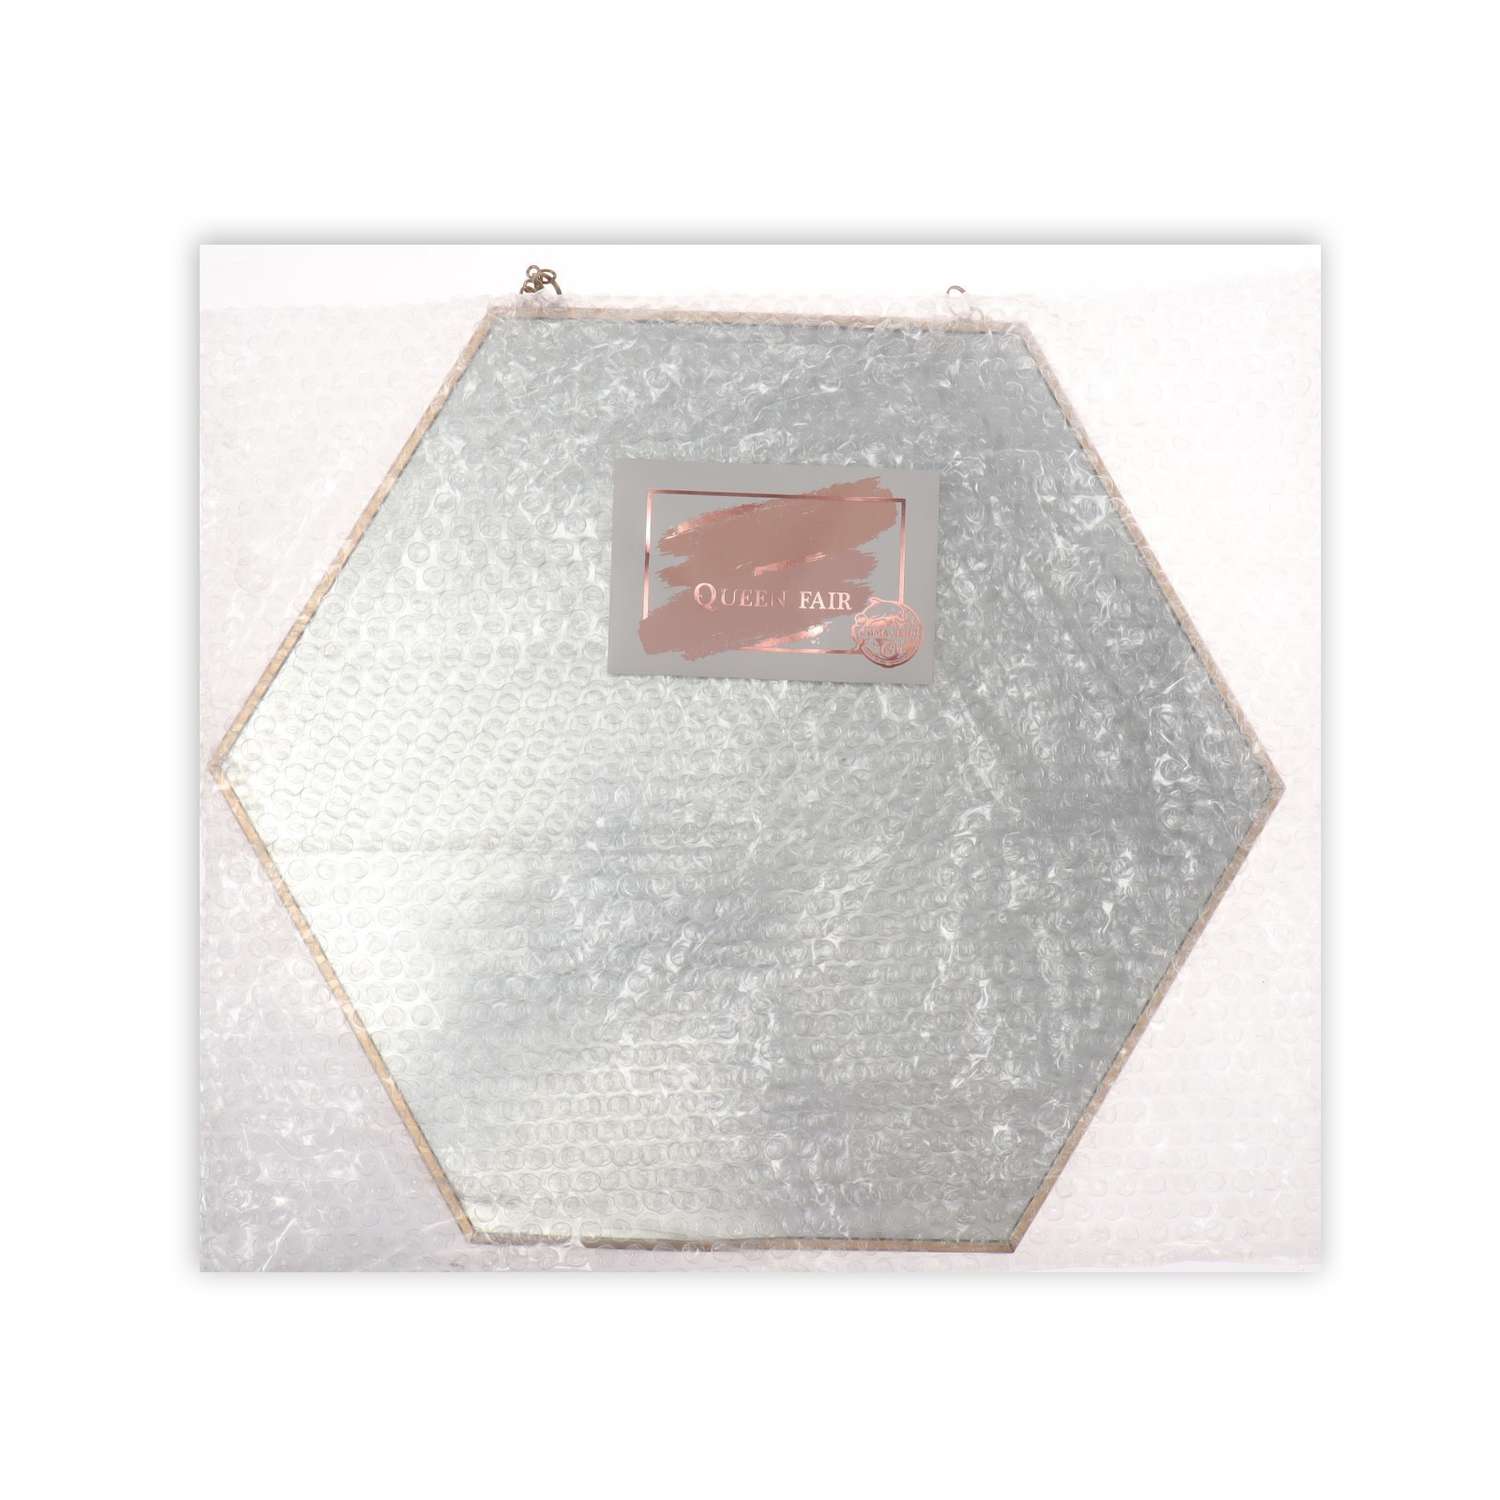 Зеркало Queen fair настенное «Изящная геометрия» зеркальная поверхность 25 × 28 см цвет золотистый - фото 5